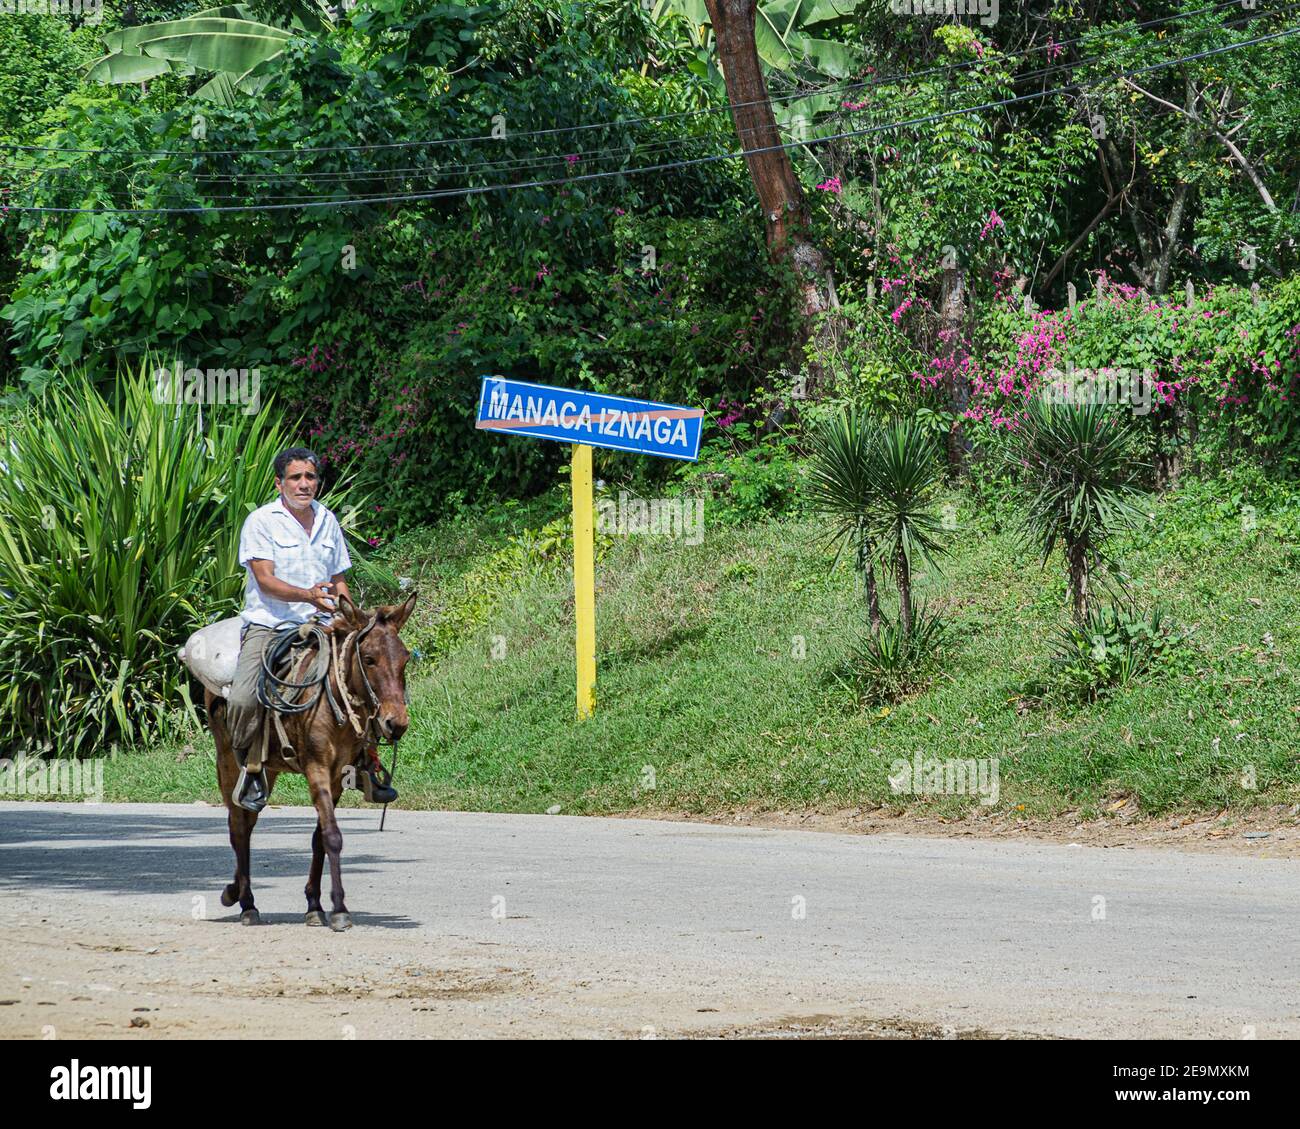 A man riding a horse in Valle de los Ingenios / The Valley of Sugar Mills near Trinidad, Sancti Spíritus, Cuba Stock Photo